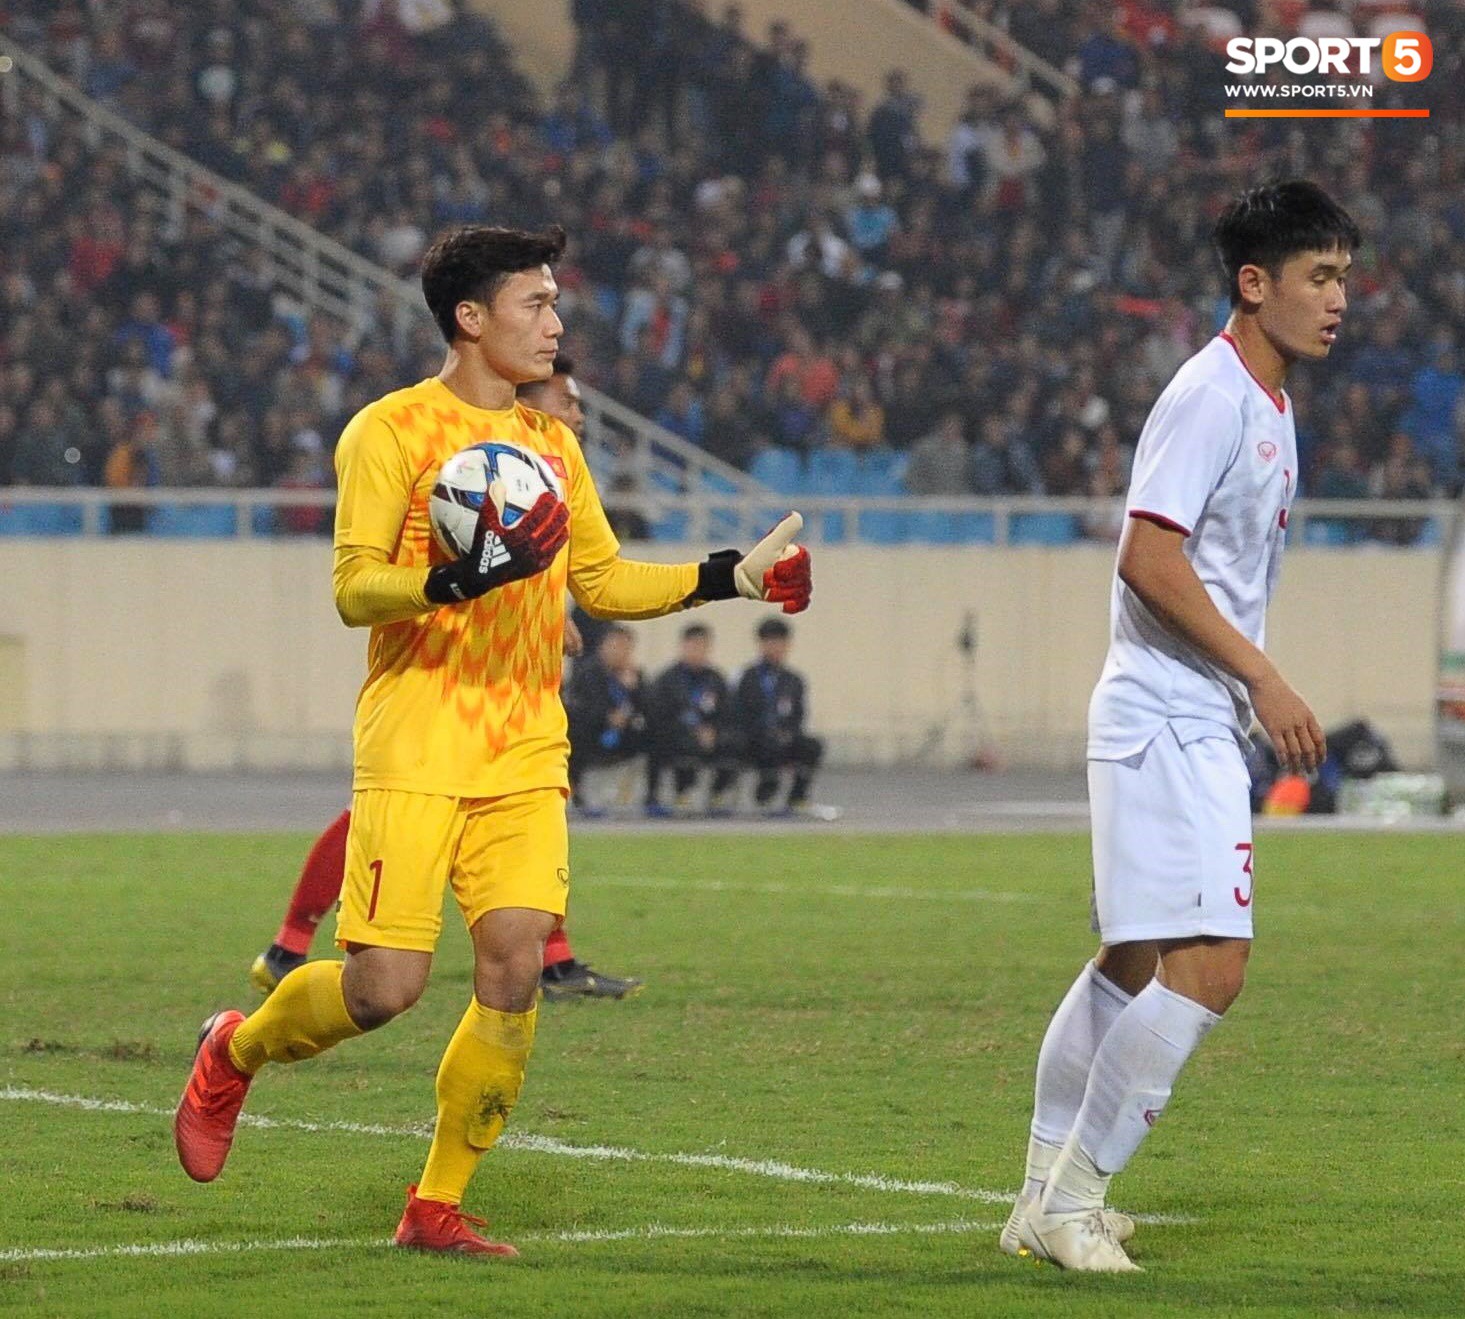 Thủ thành Bùi Tiến Dũng xử lý khó hiểu trong trận đấu với U23 Indonesia - Ảnh 5.